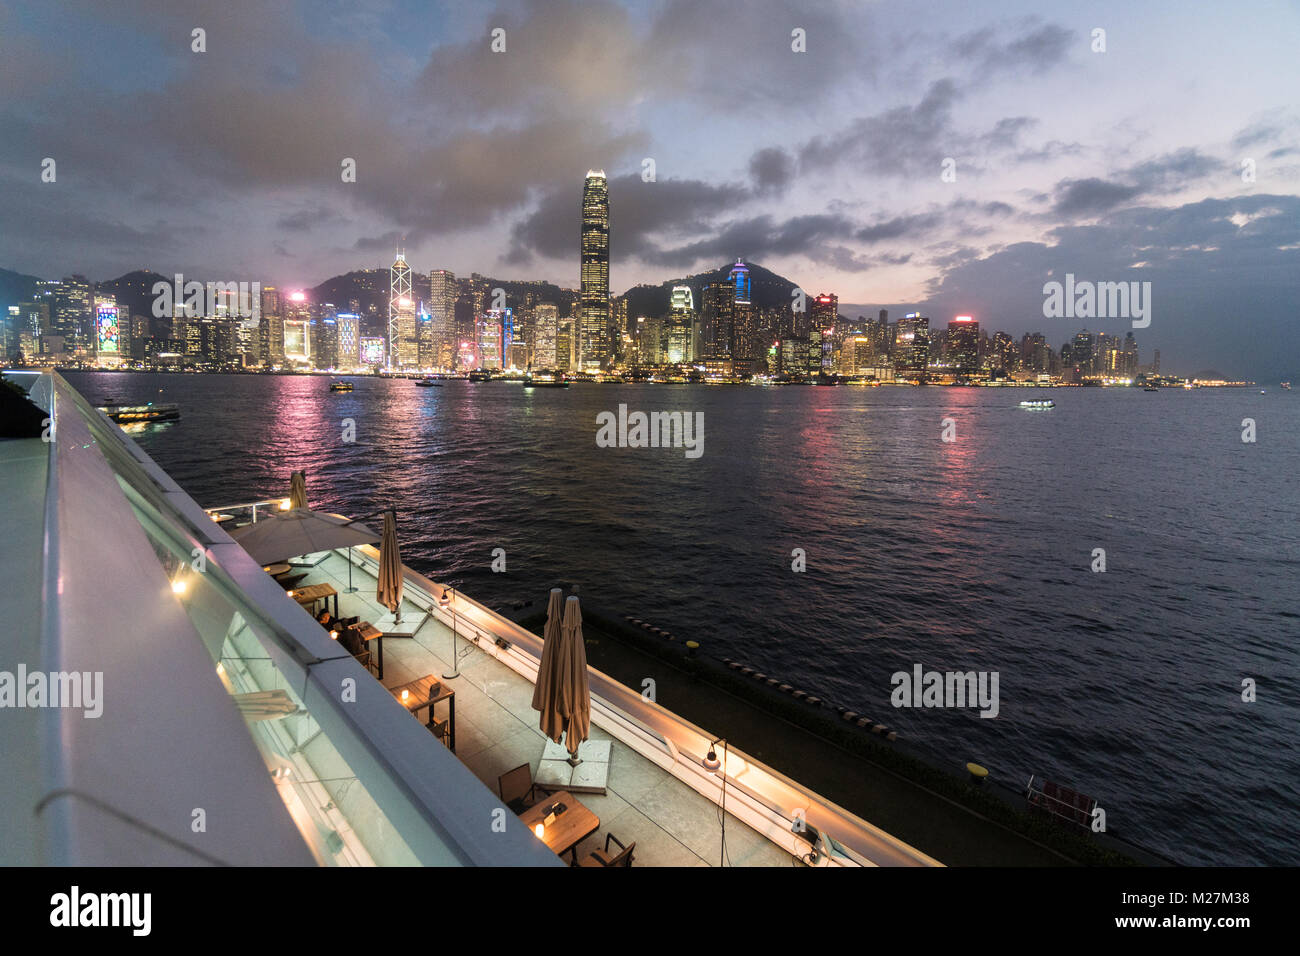 Hong Kong - Le 25 janvier 2018 : La plate-forme panoramique sur le dessus de l'océan le terminal de croisière à Kowloon avec la célèbre île de Hong Kong skyline at night Banque D'Images